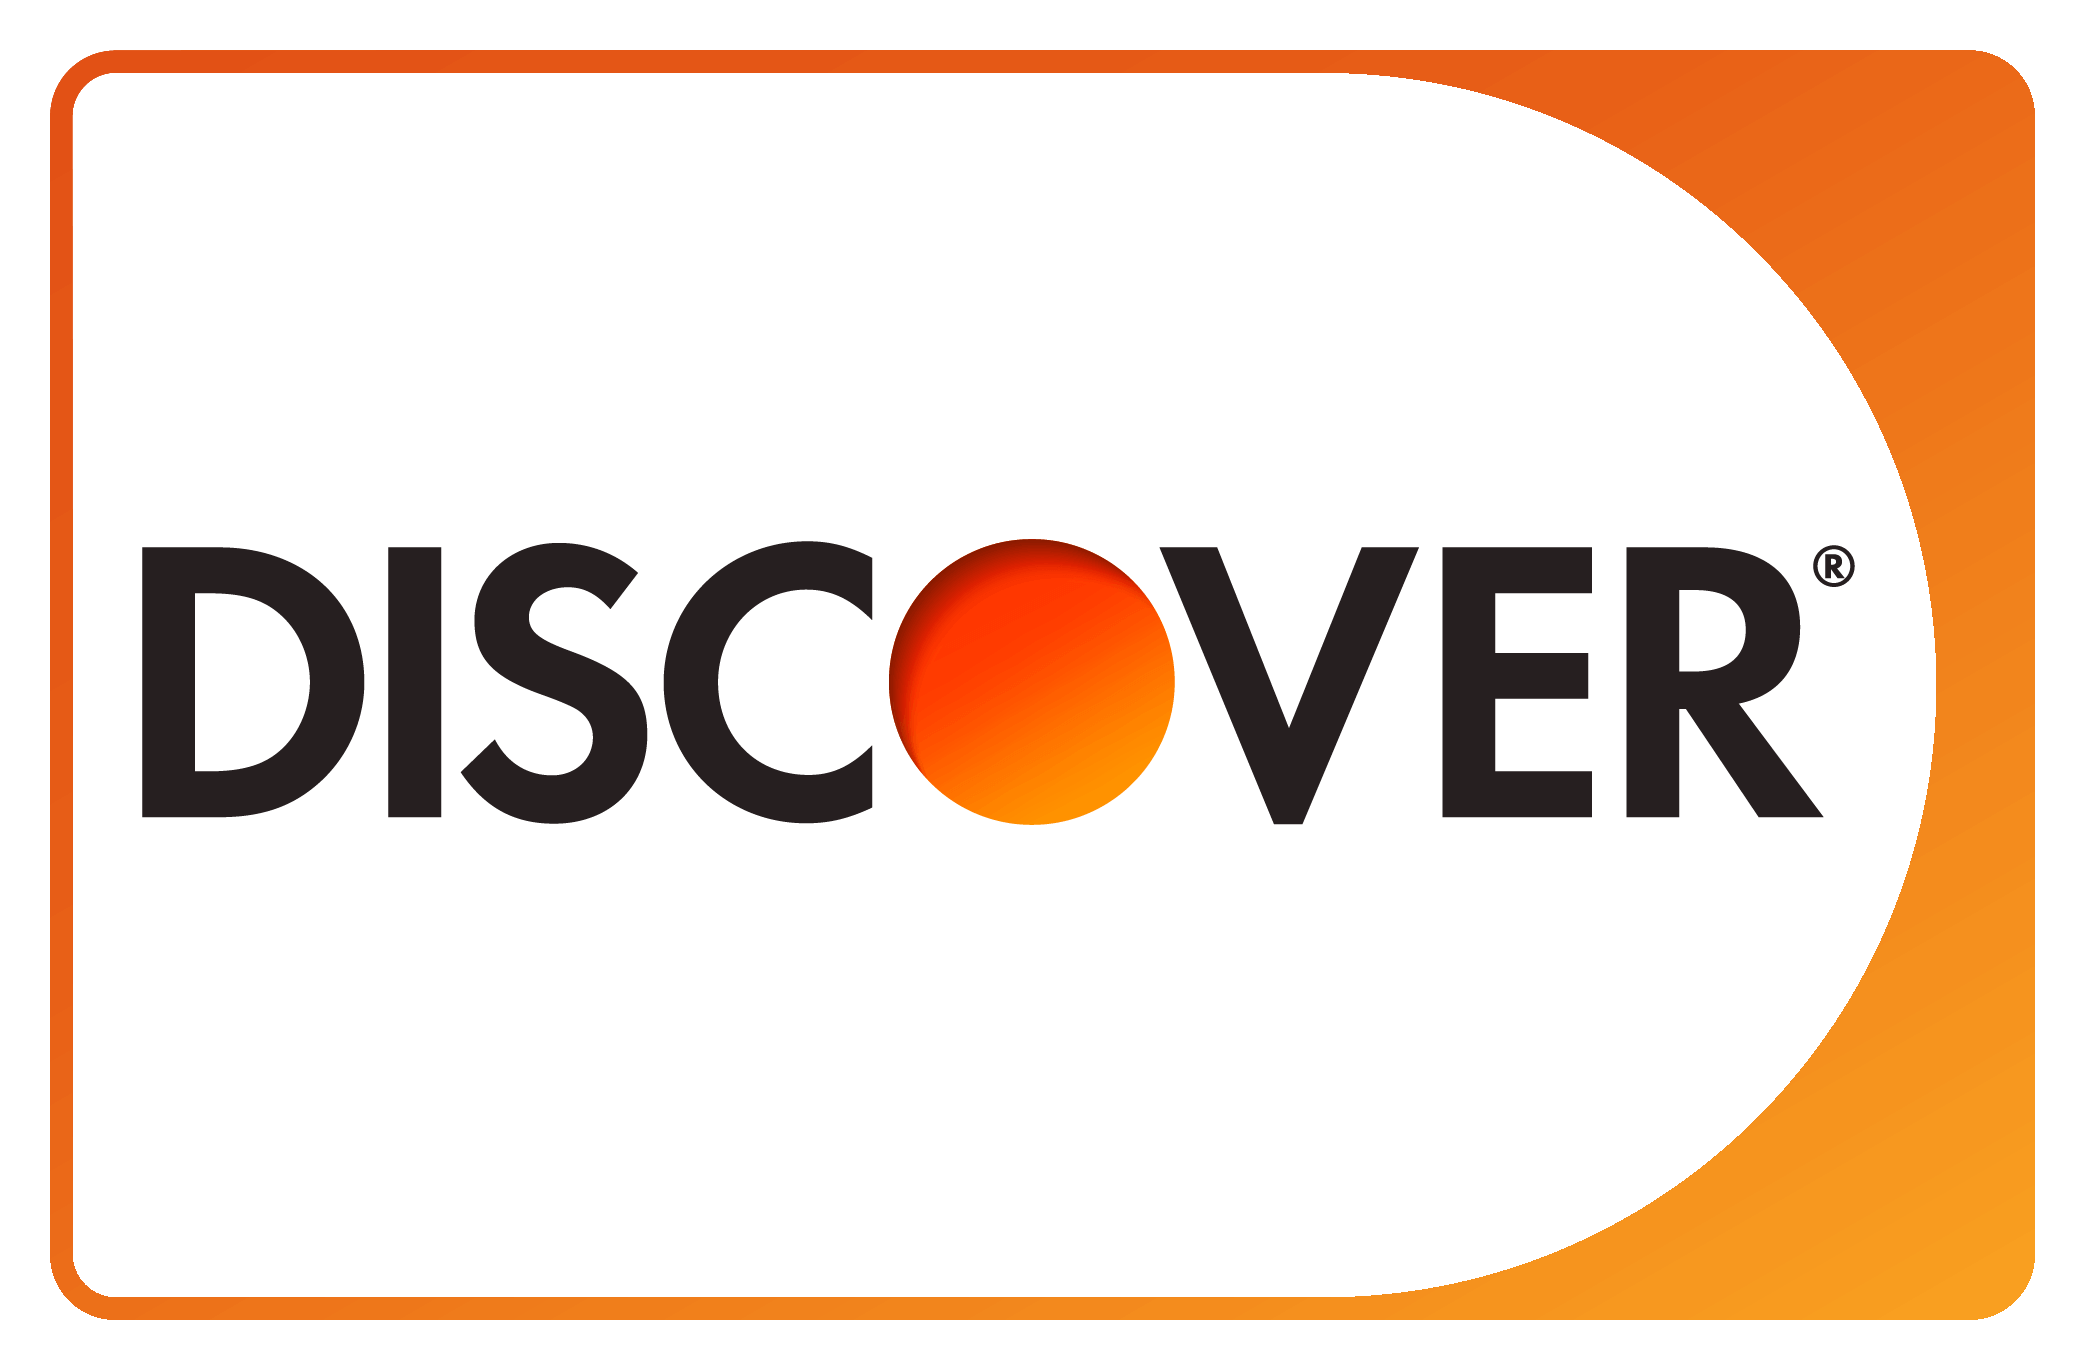 Discover® Logo